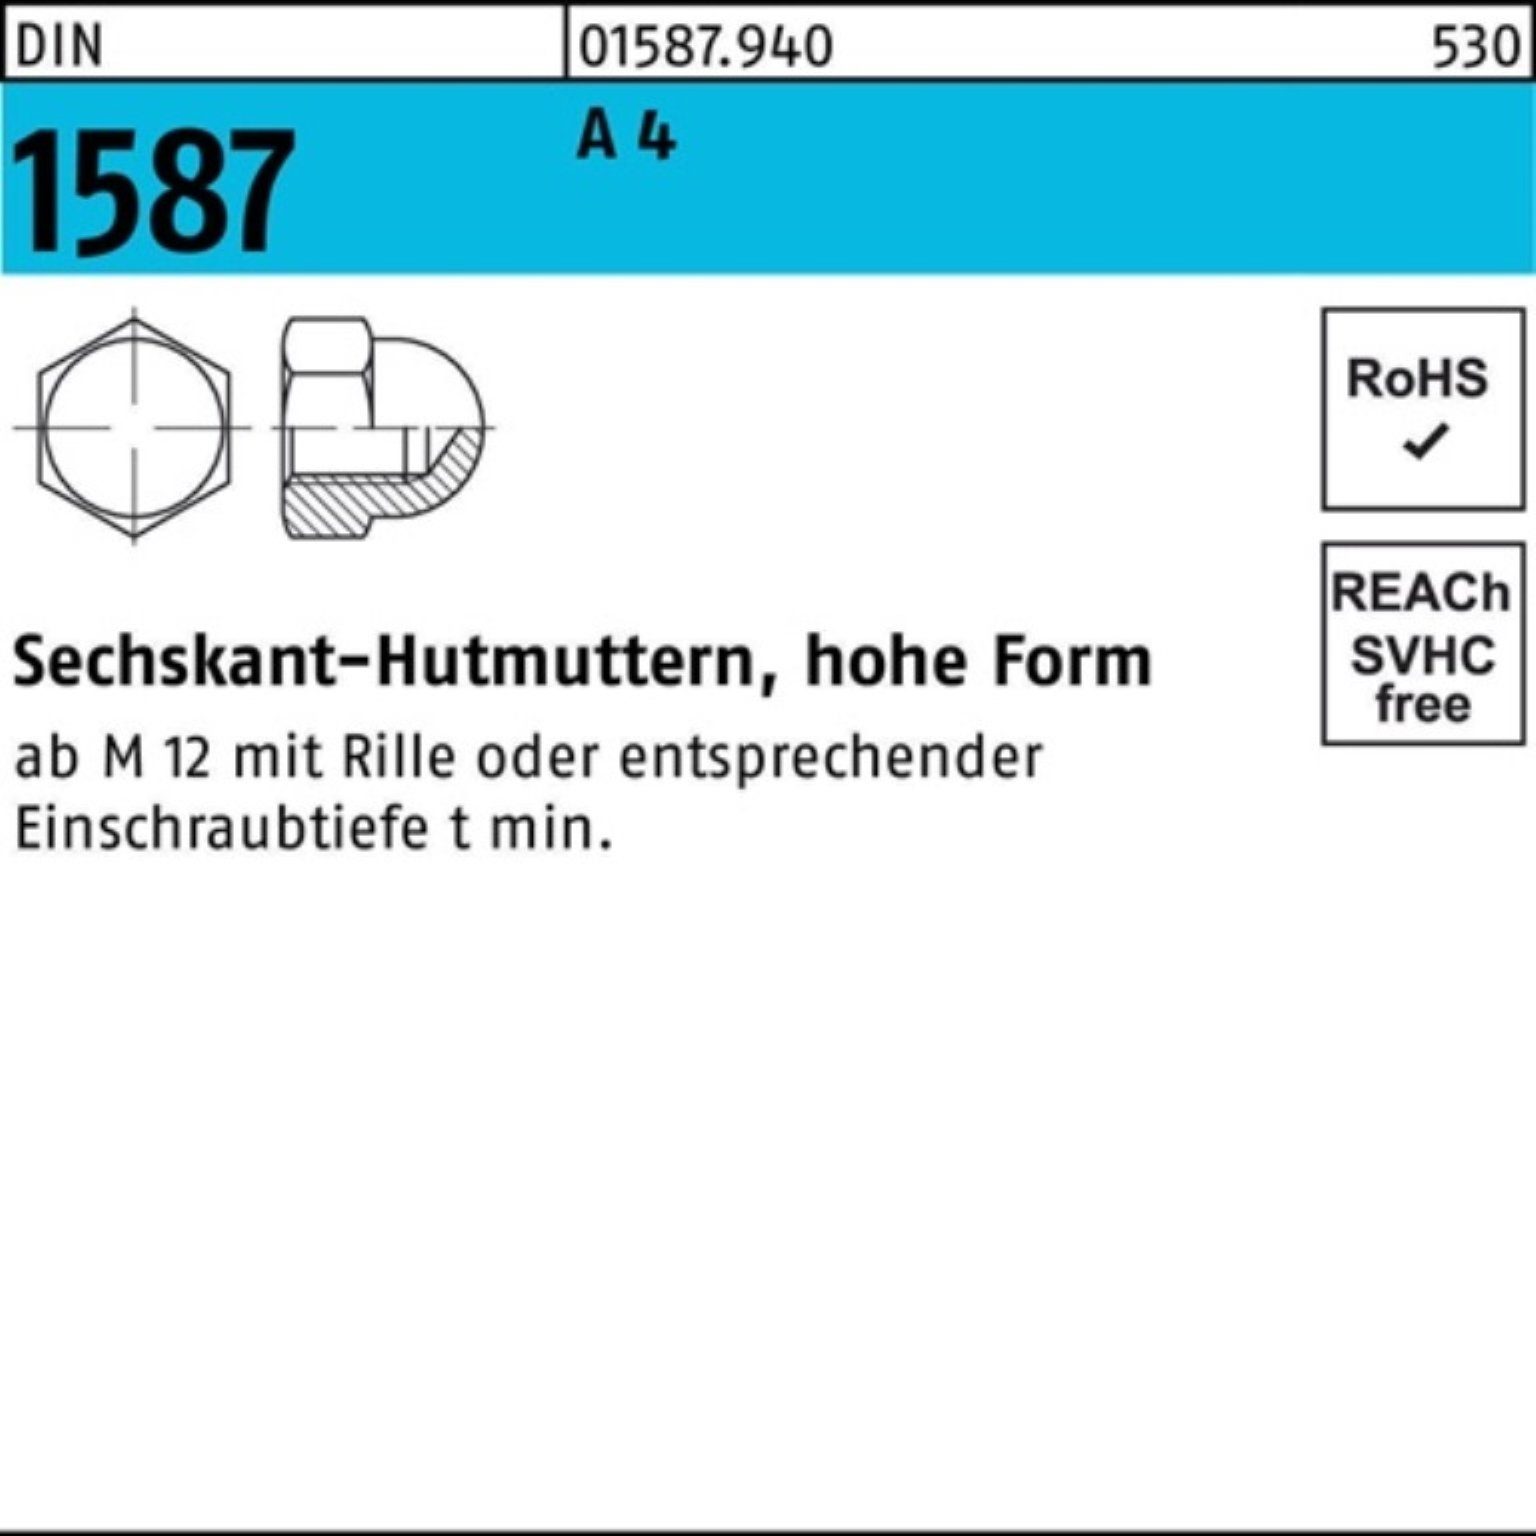 Stück M12 Hutmutter Pack Sechskanthutmutter DIN A 4 158 SW 25 DIN Reyher 100er 1587 19